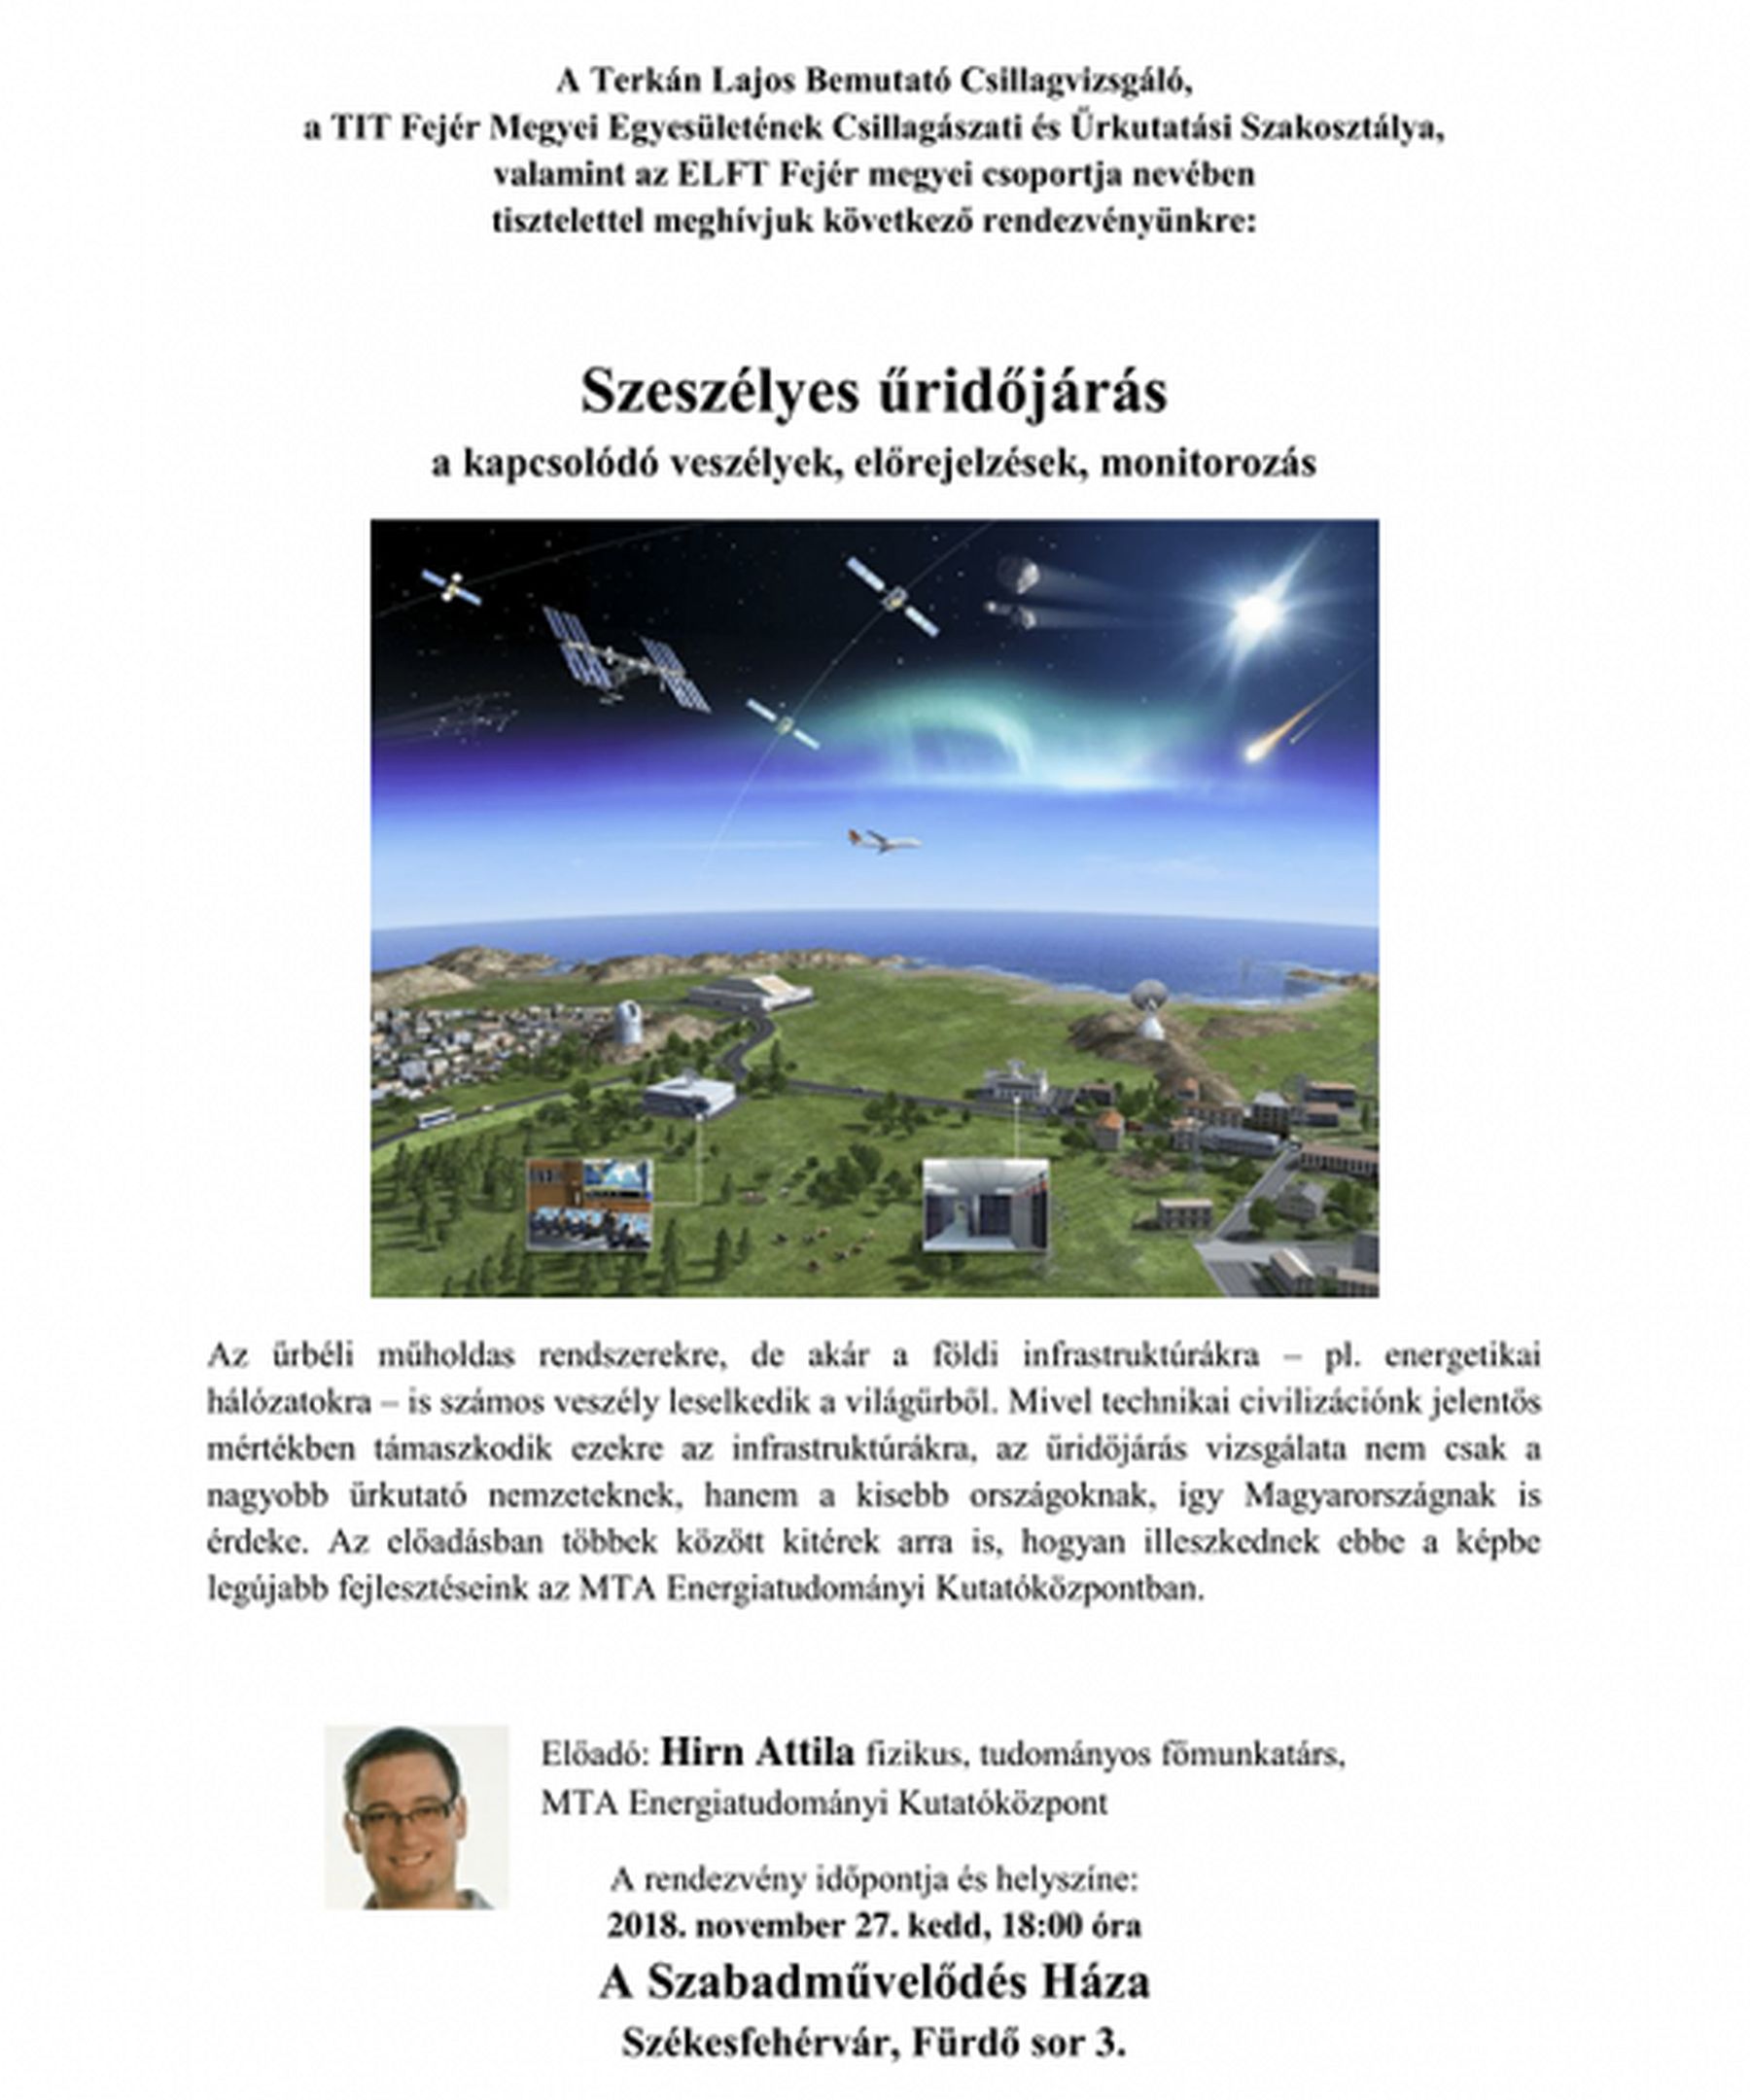 Szeszélyes űridőjárás - csillagászati előadás lesz A Szabadművelődés Házában